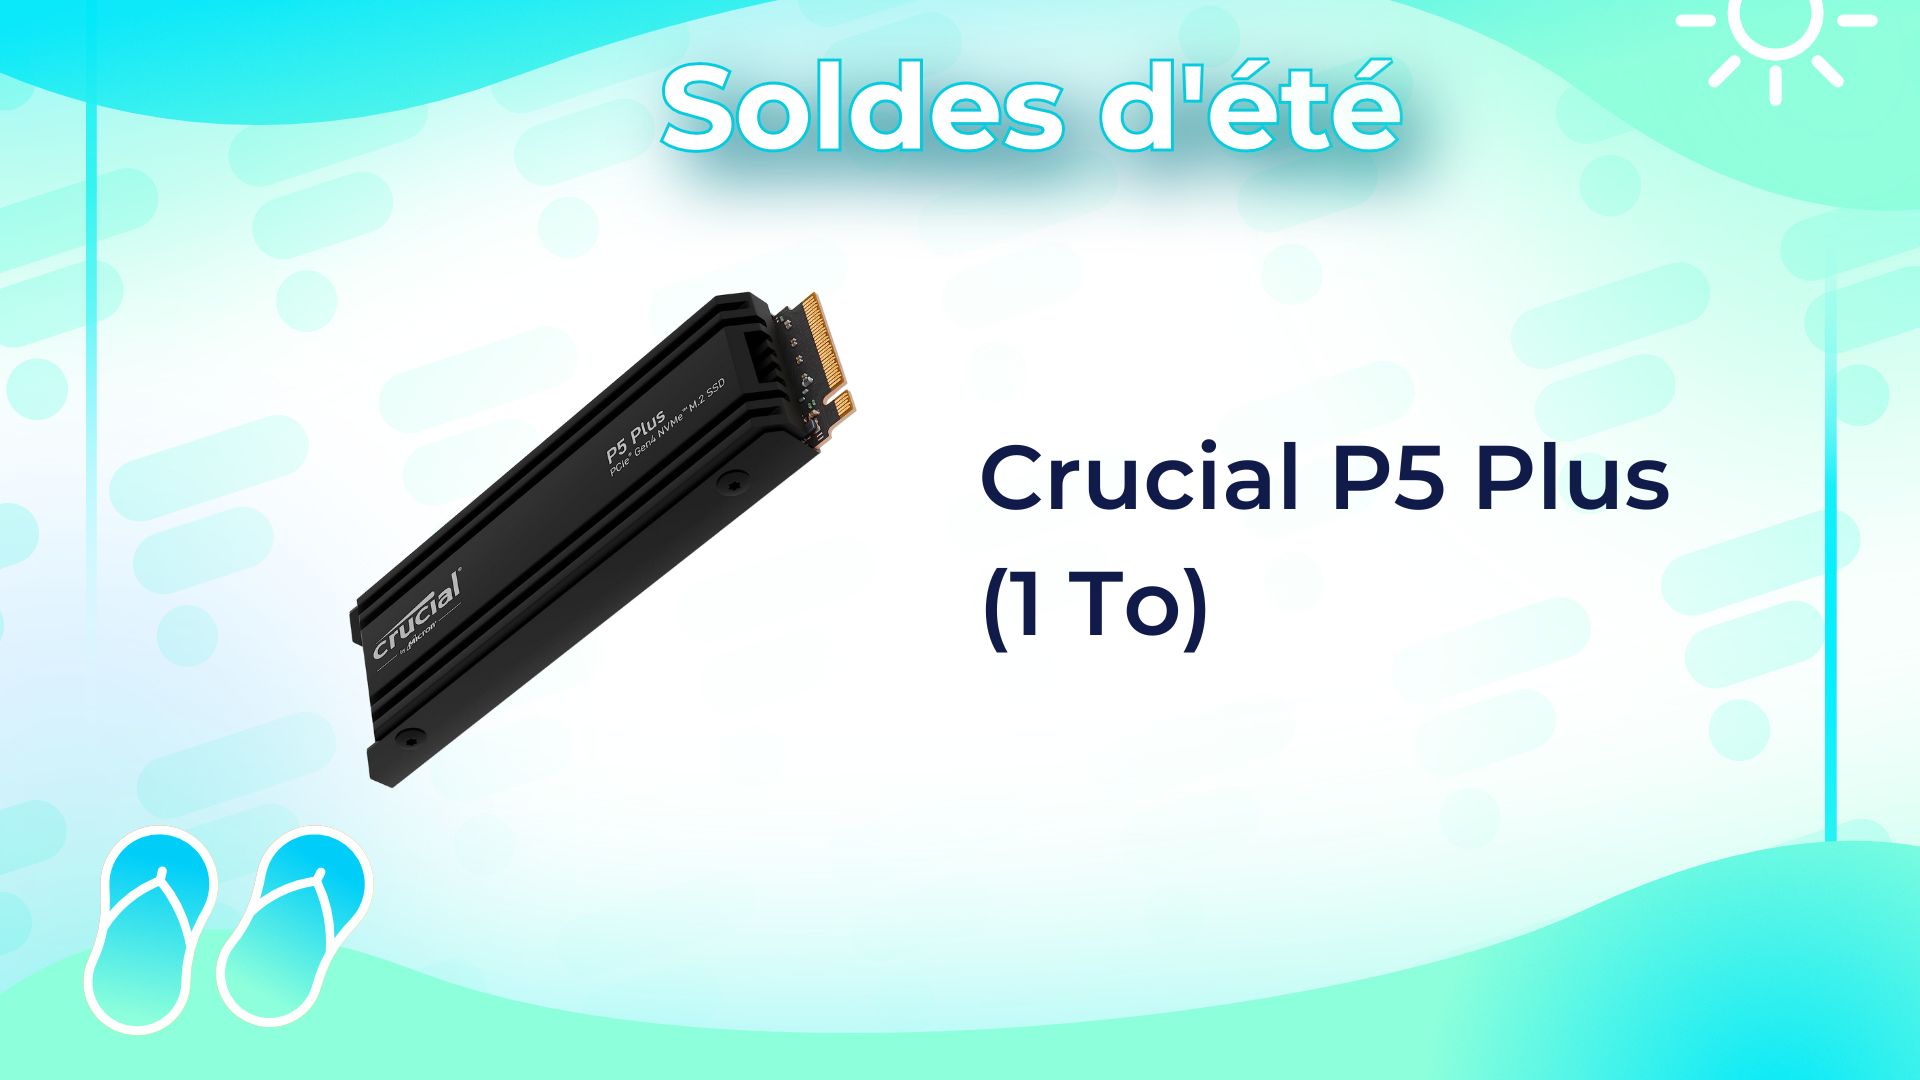 Le SSD Crucial P5 Plus compatible avec la PS5 n'avait jamais été